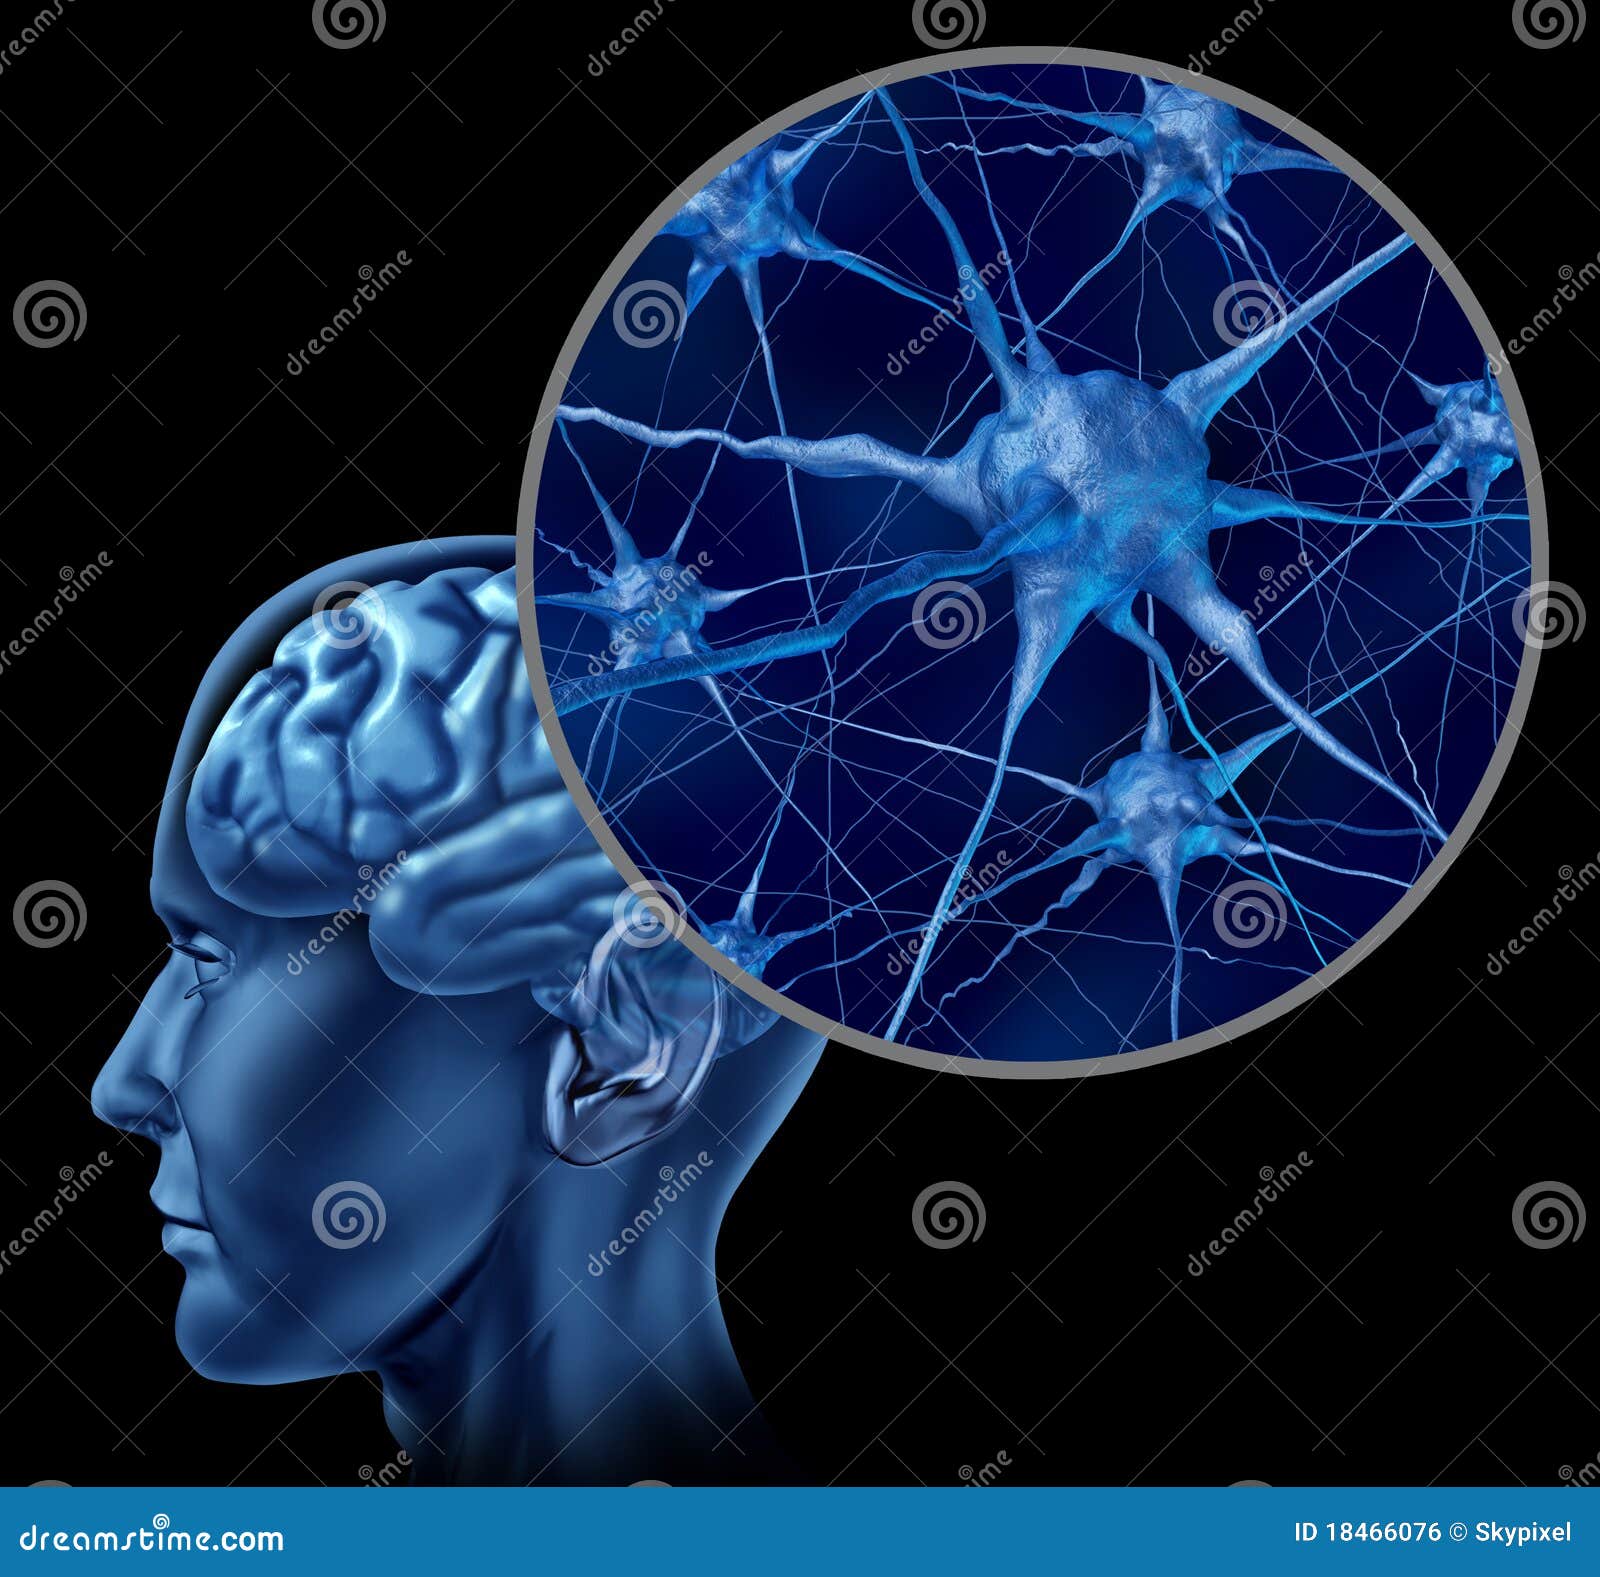 невроны активного конца мозга людские вверх. орган невронов памяти людской сведении конца клетки головного мозга деятельности медицинский отнес представлено показывающ символ к вверх